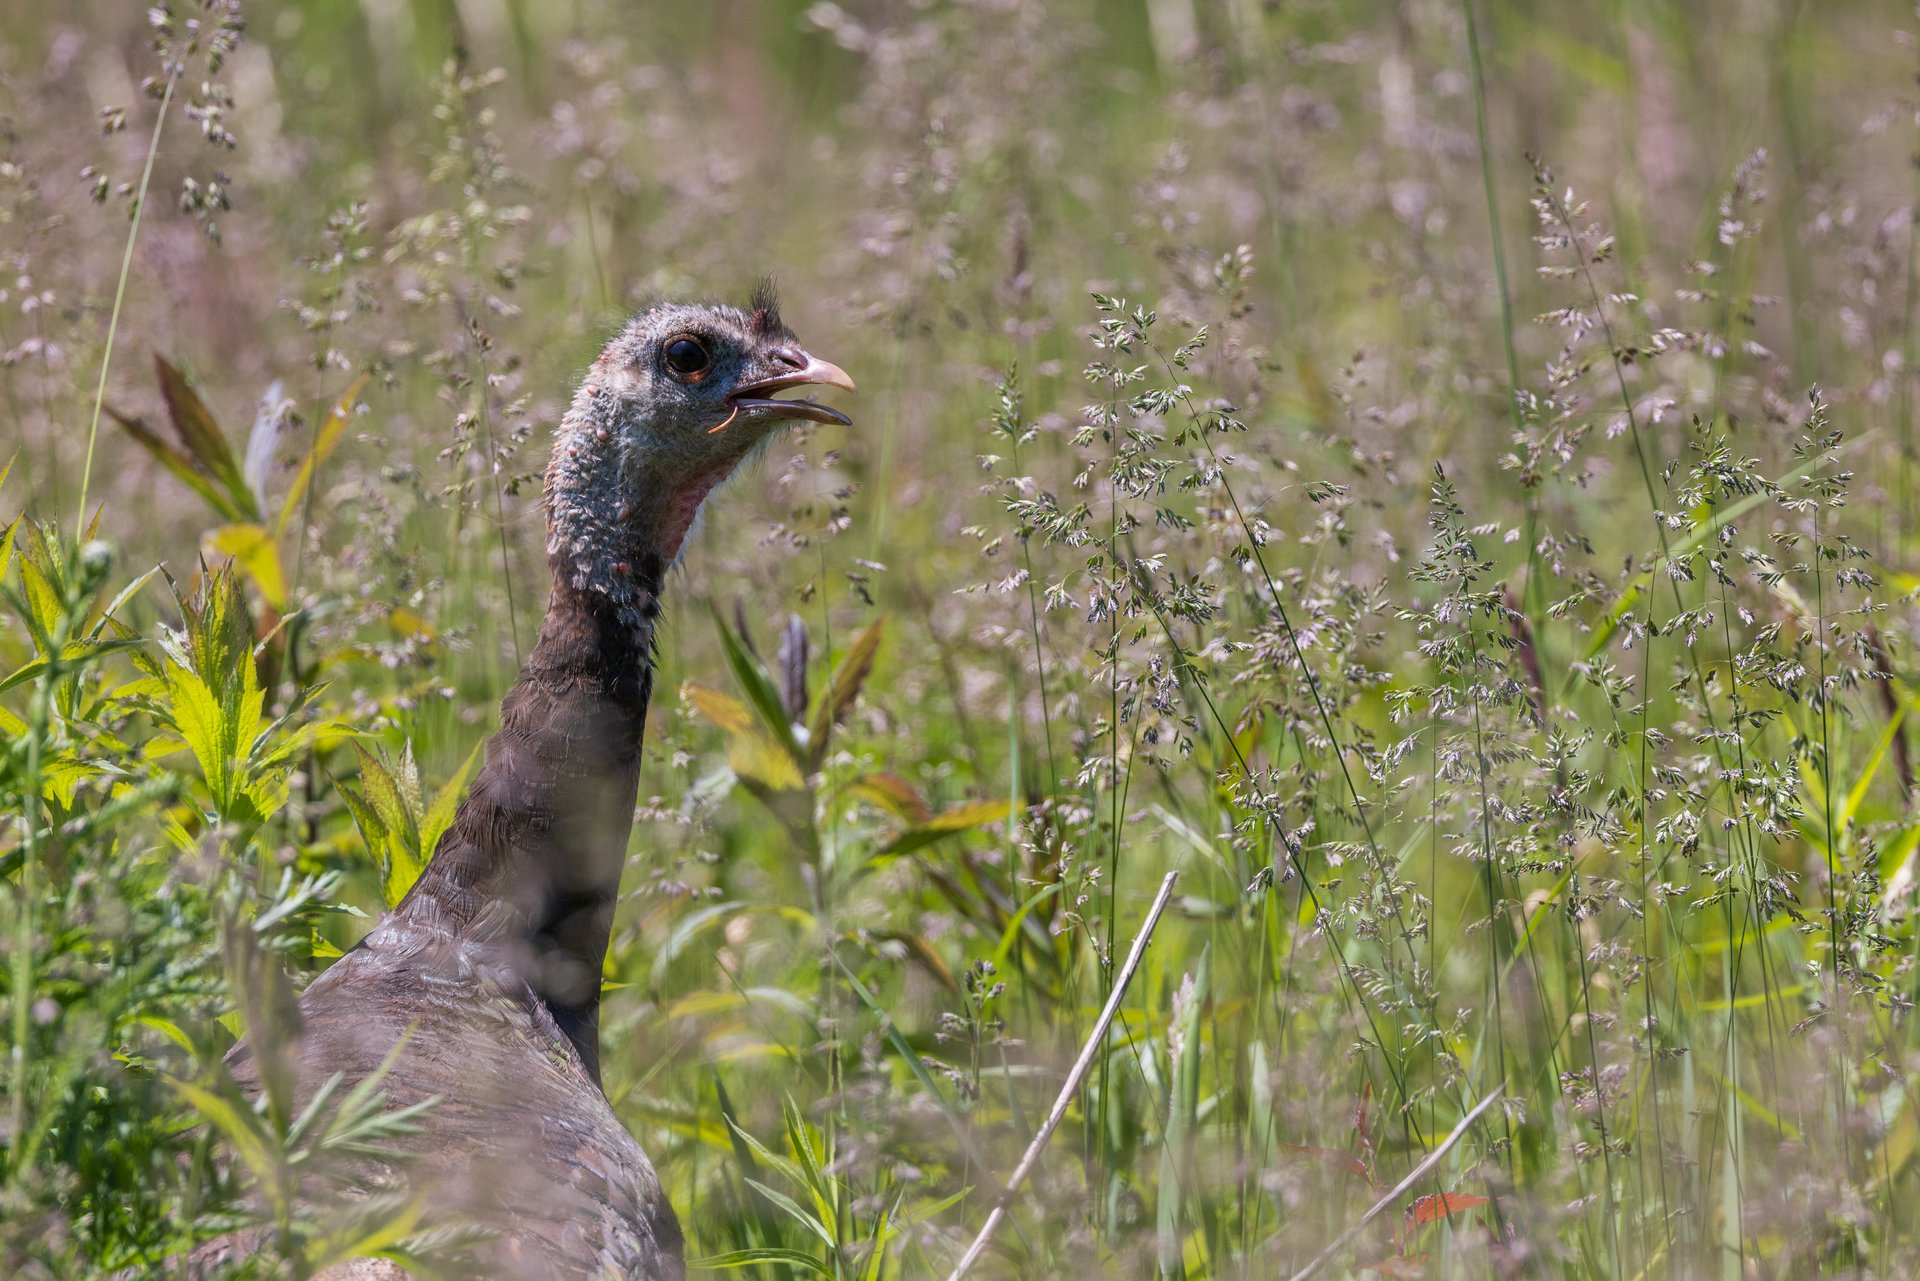 Wild Turkey in grassland